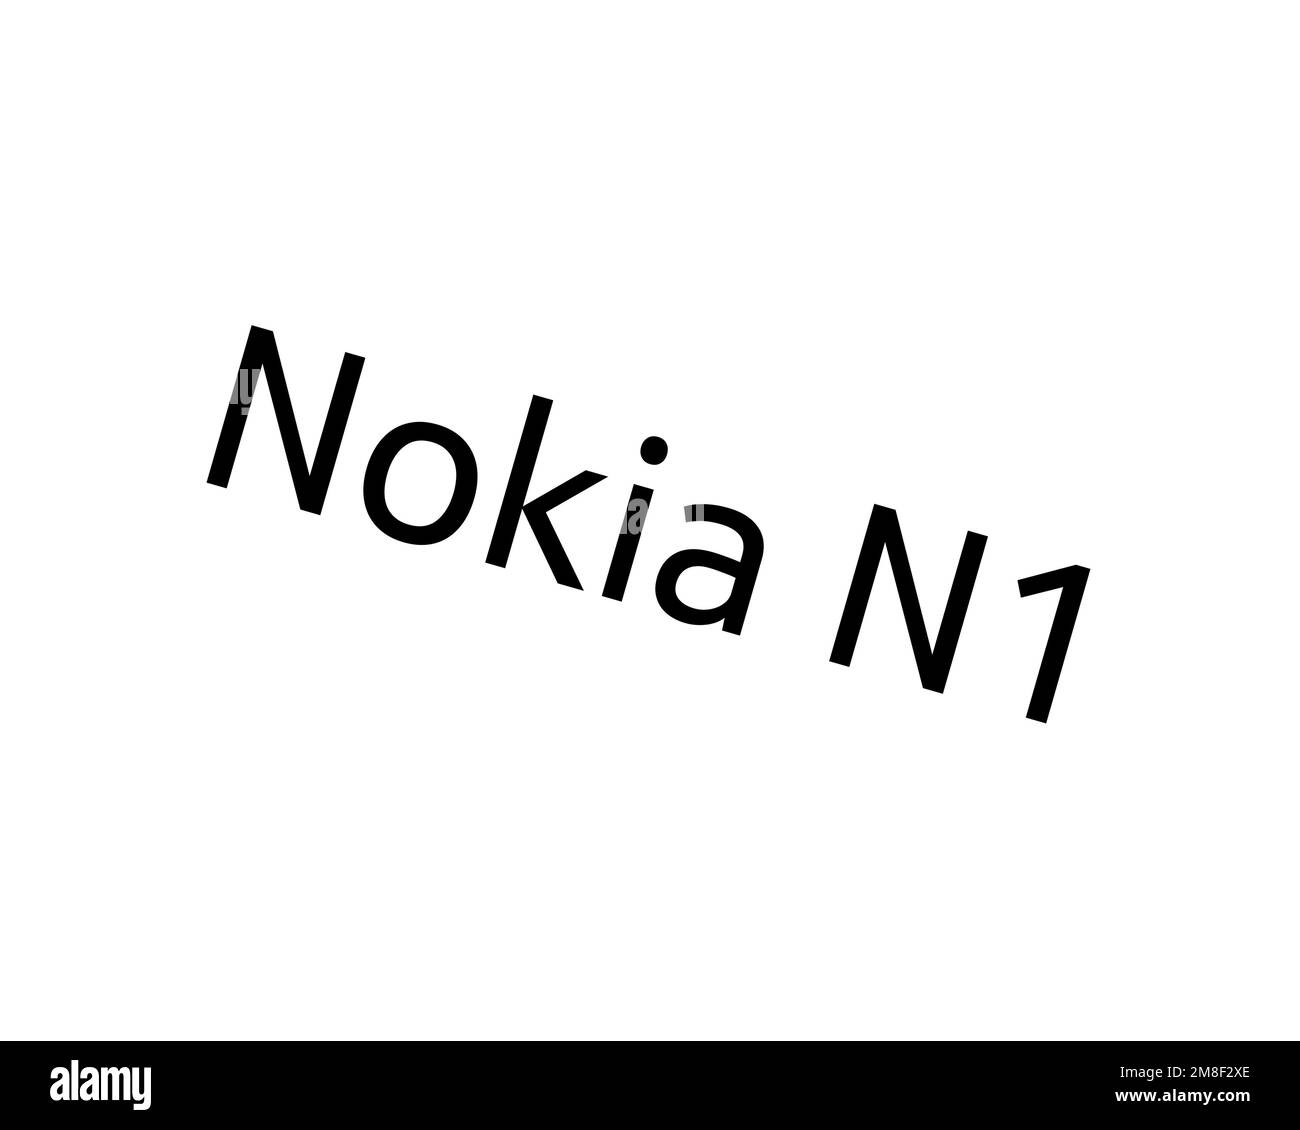 Nokia N1, logo ruotato, sfondo bianco B Foto Stock